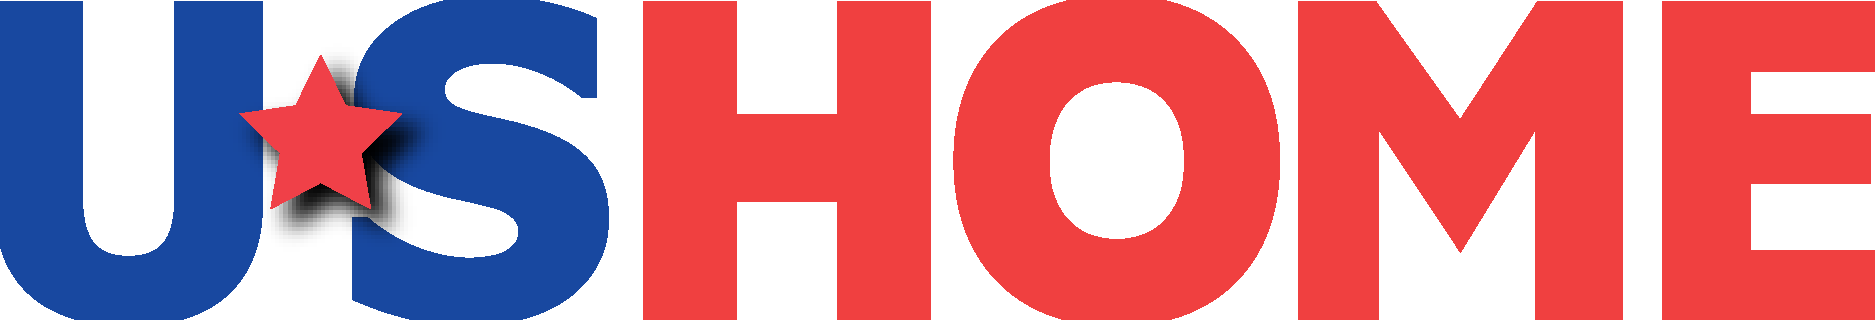 U.S. Home Logo Vector